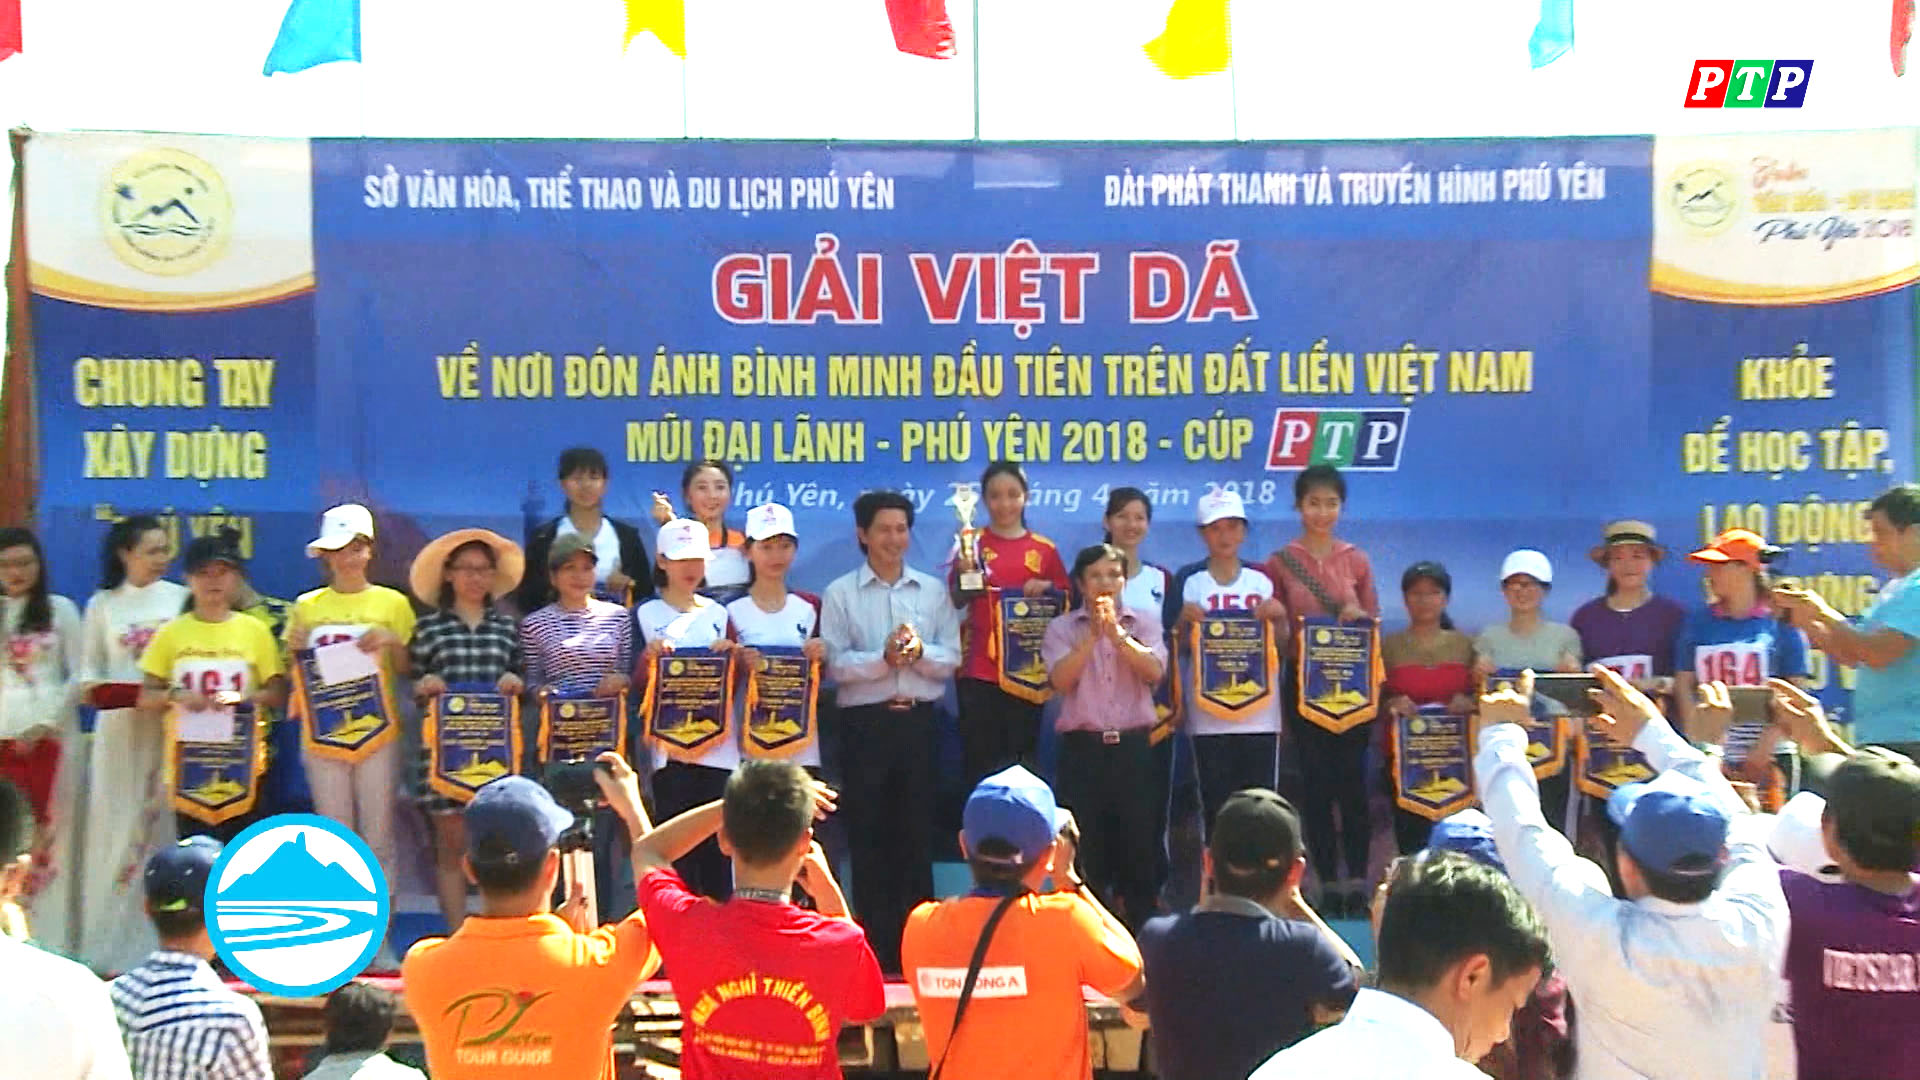 Giải Việt dã về nơi đón ánh bình minh đầu tiên trên đất liền Việt Nam: Mũi Đại Lãnh – Phú Yên 2018 Cúp PTP